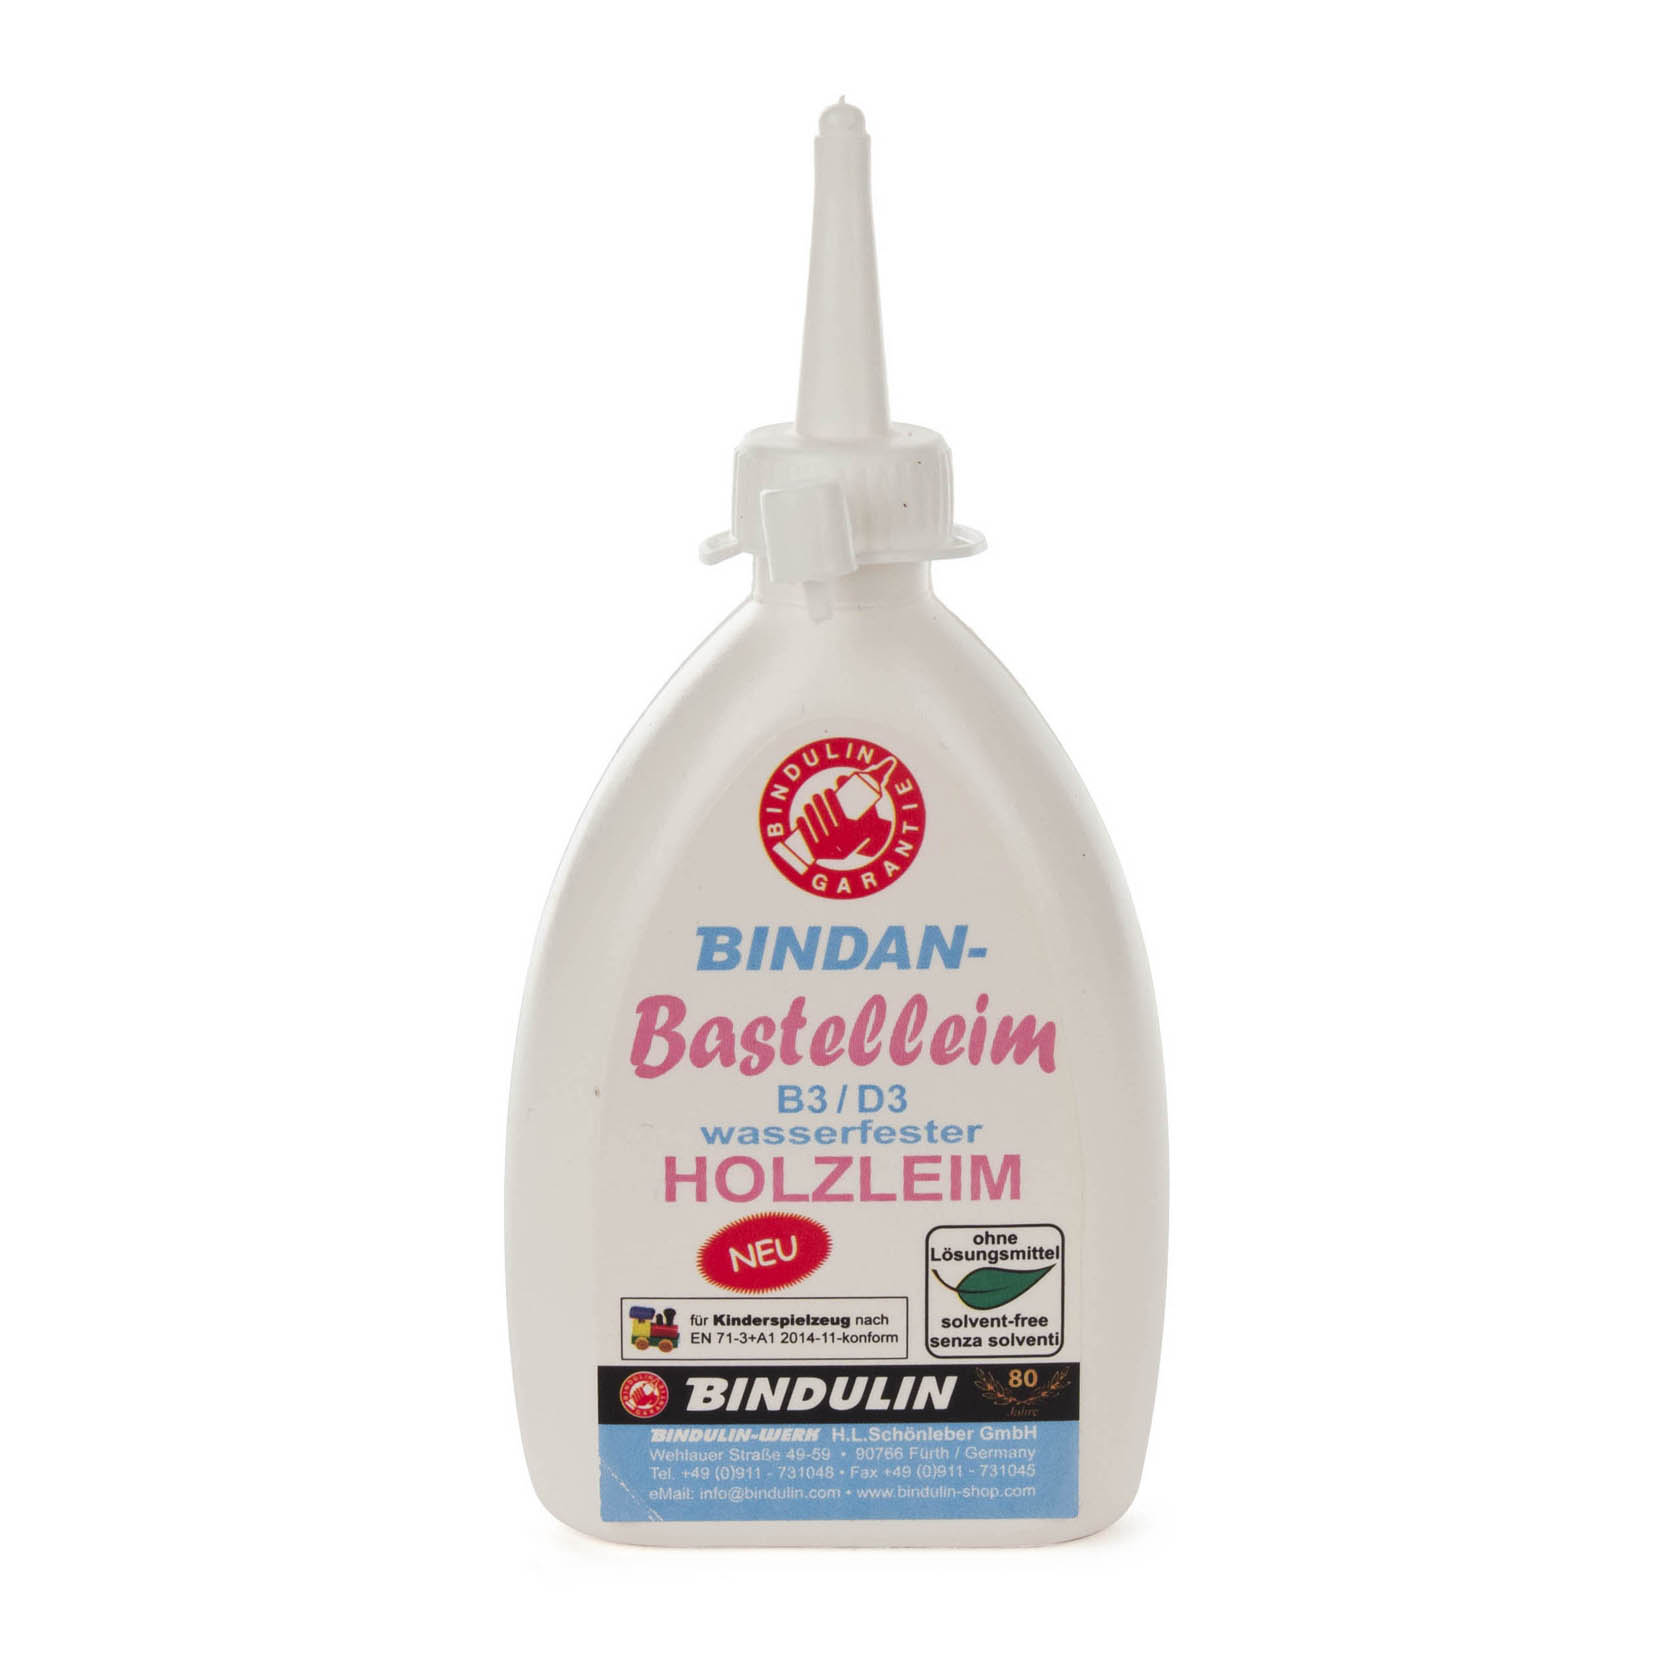 BINDAN-BB Bastelleim 100g B3/D3 Holzleim im Dregeno Online Shop günstig kaufen